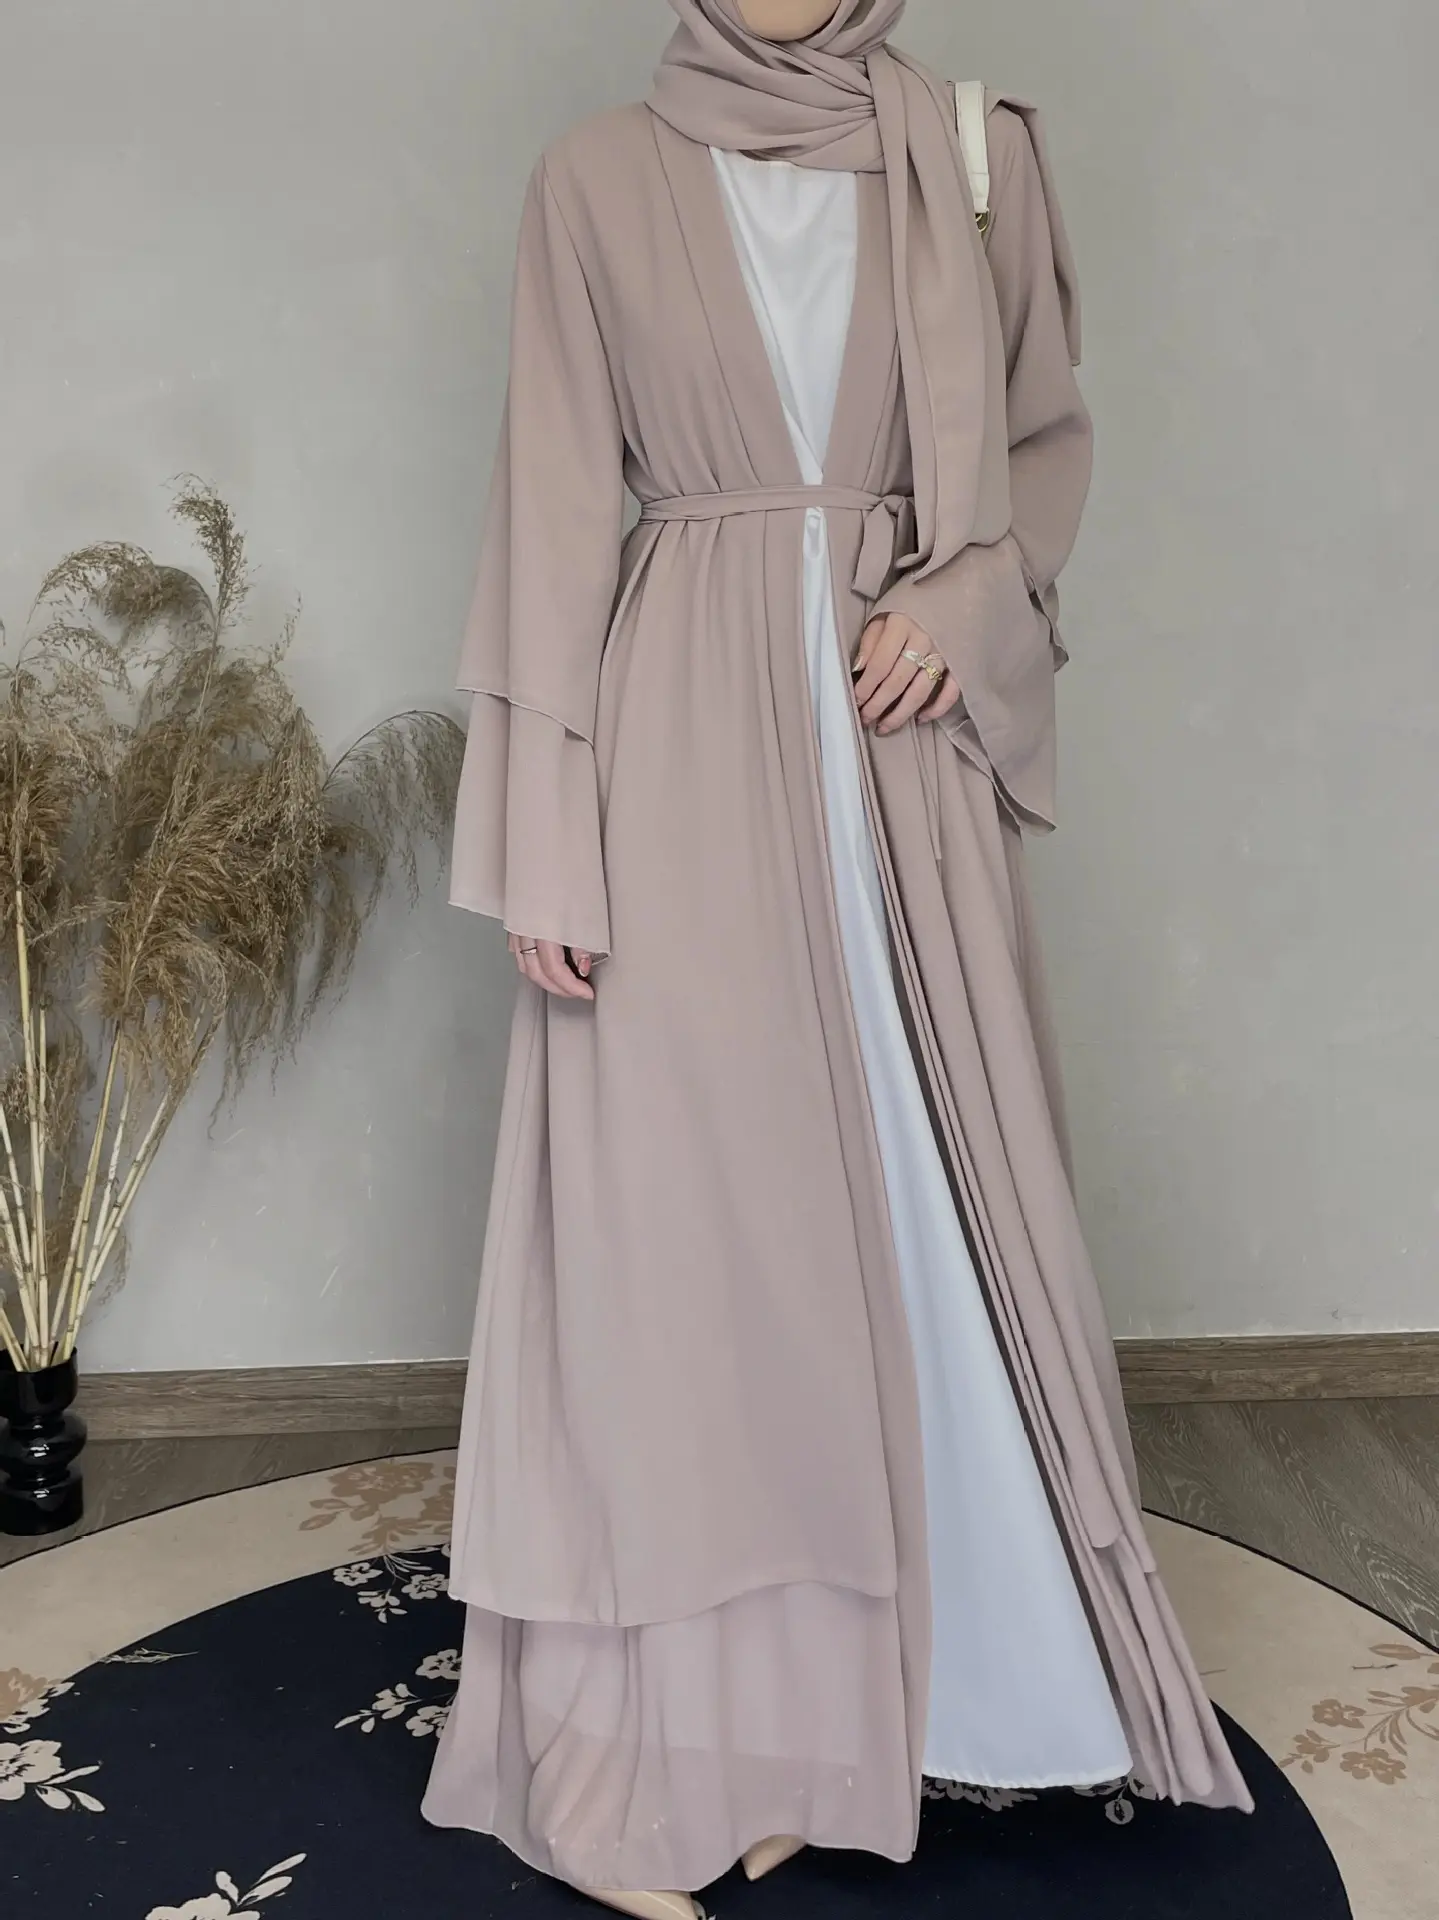 Venta al por mayor Turquía elegante EID mujeres musulmanas vestido de gasa modesto musulmán vestido a juego Hjiab Kimono abierto Dubai Abaya túnica cárdigan